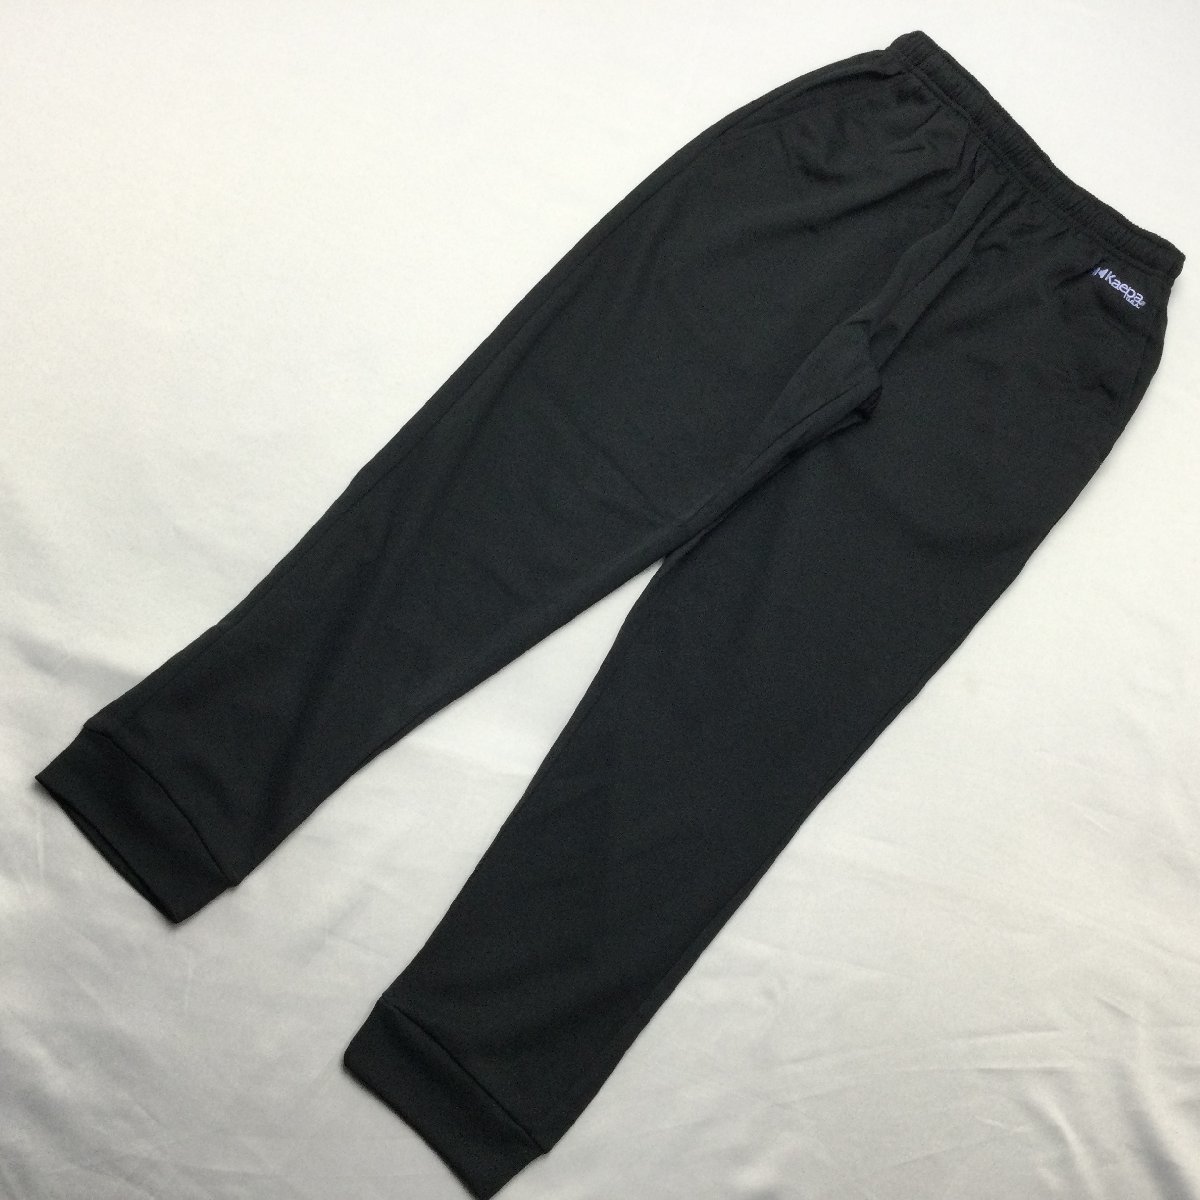 [ бесплатная доставка ][ новый товар ]Kaepa женский тренировочные штаны (. вода скорость .UV cut ) M черный * violet *471510